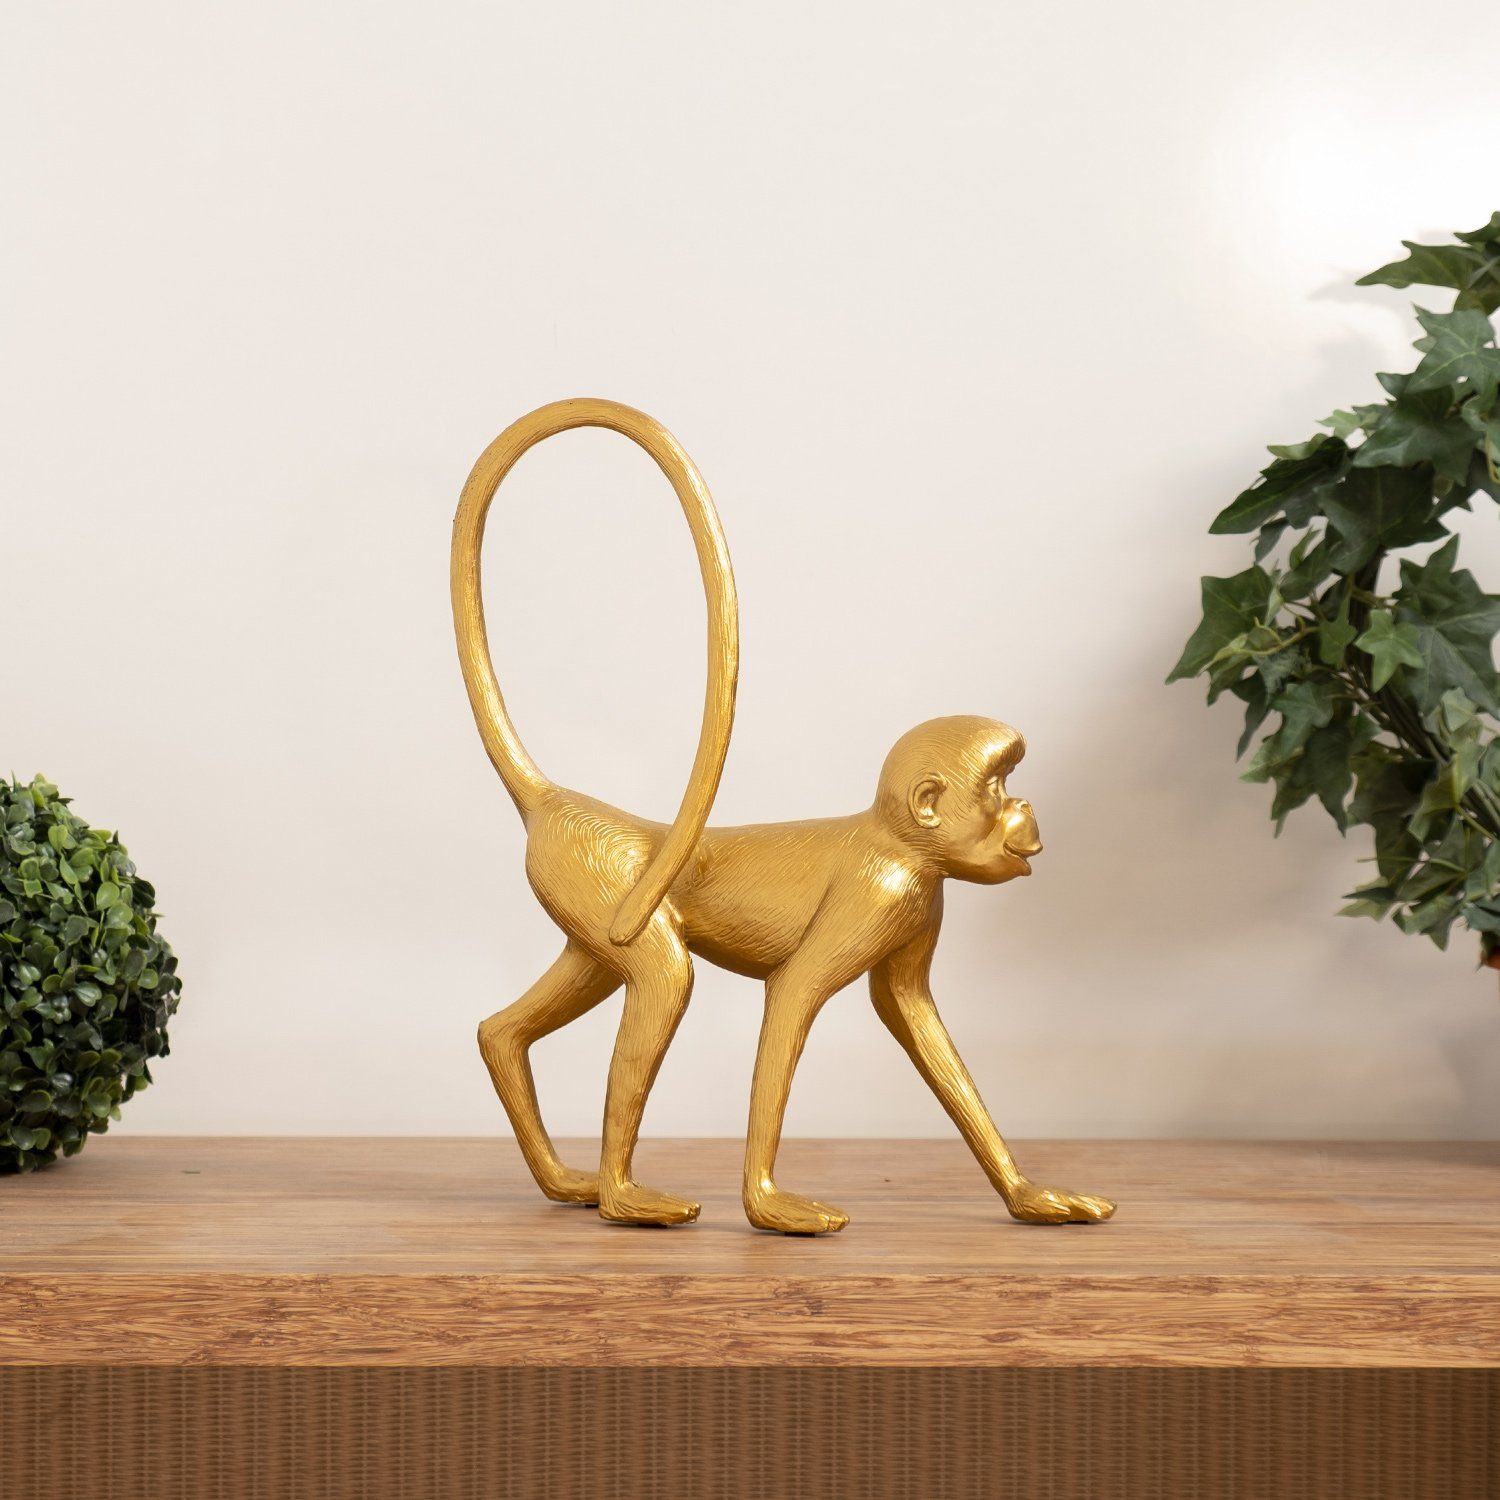 Moritz Dekofigur aus Polyresin Figuren Dekofigur Dekoration langer Deko-Figur Affe spaziert Schwanz aus gold, Polyresin Dekoelement